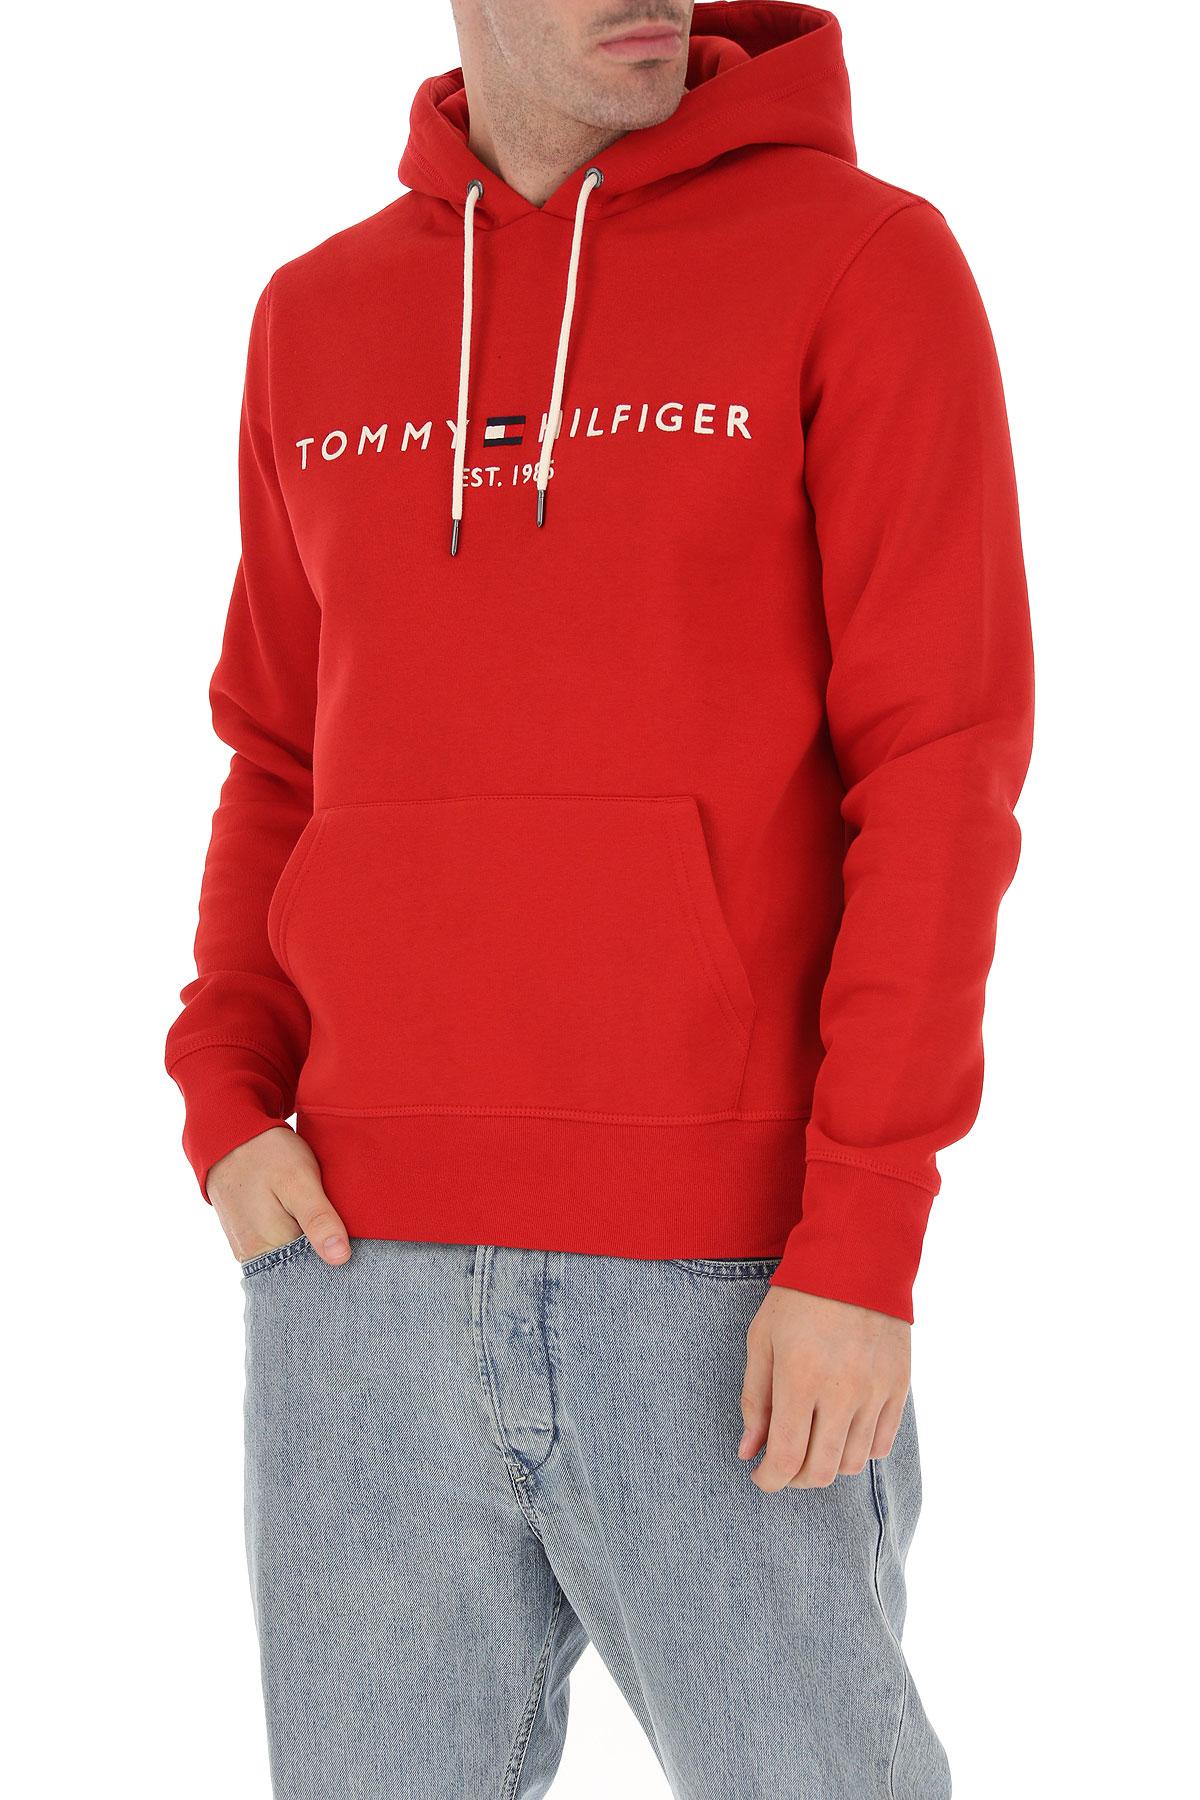 hilfiger hoodie red